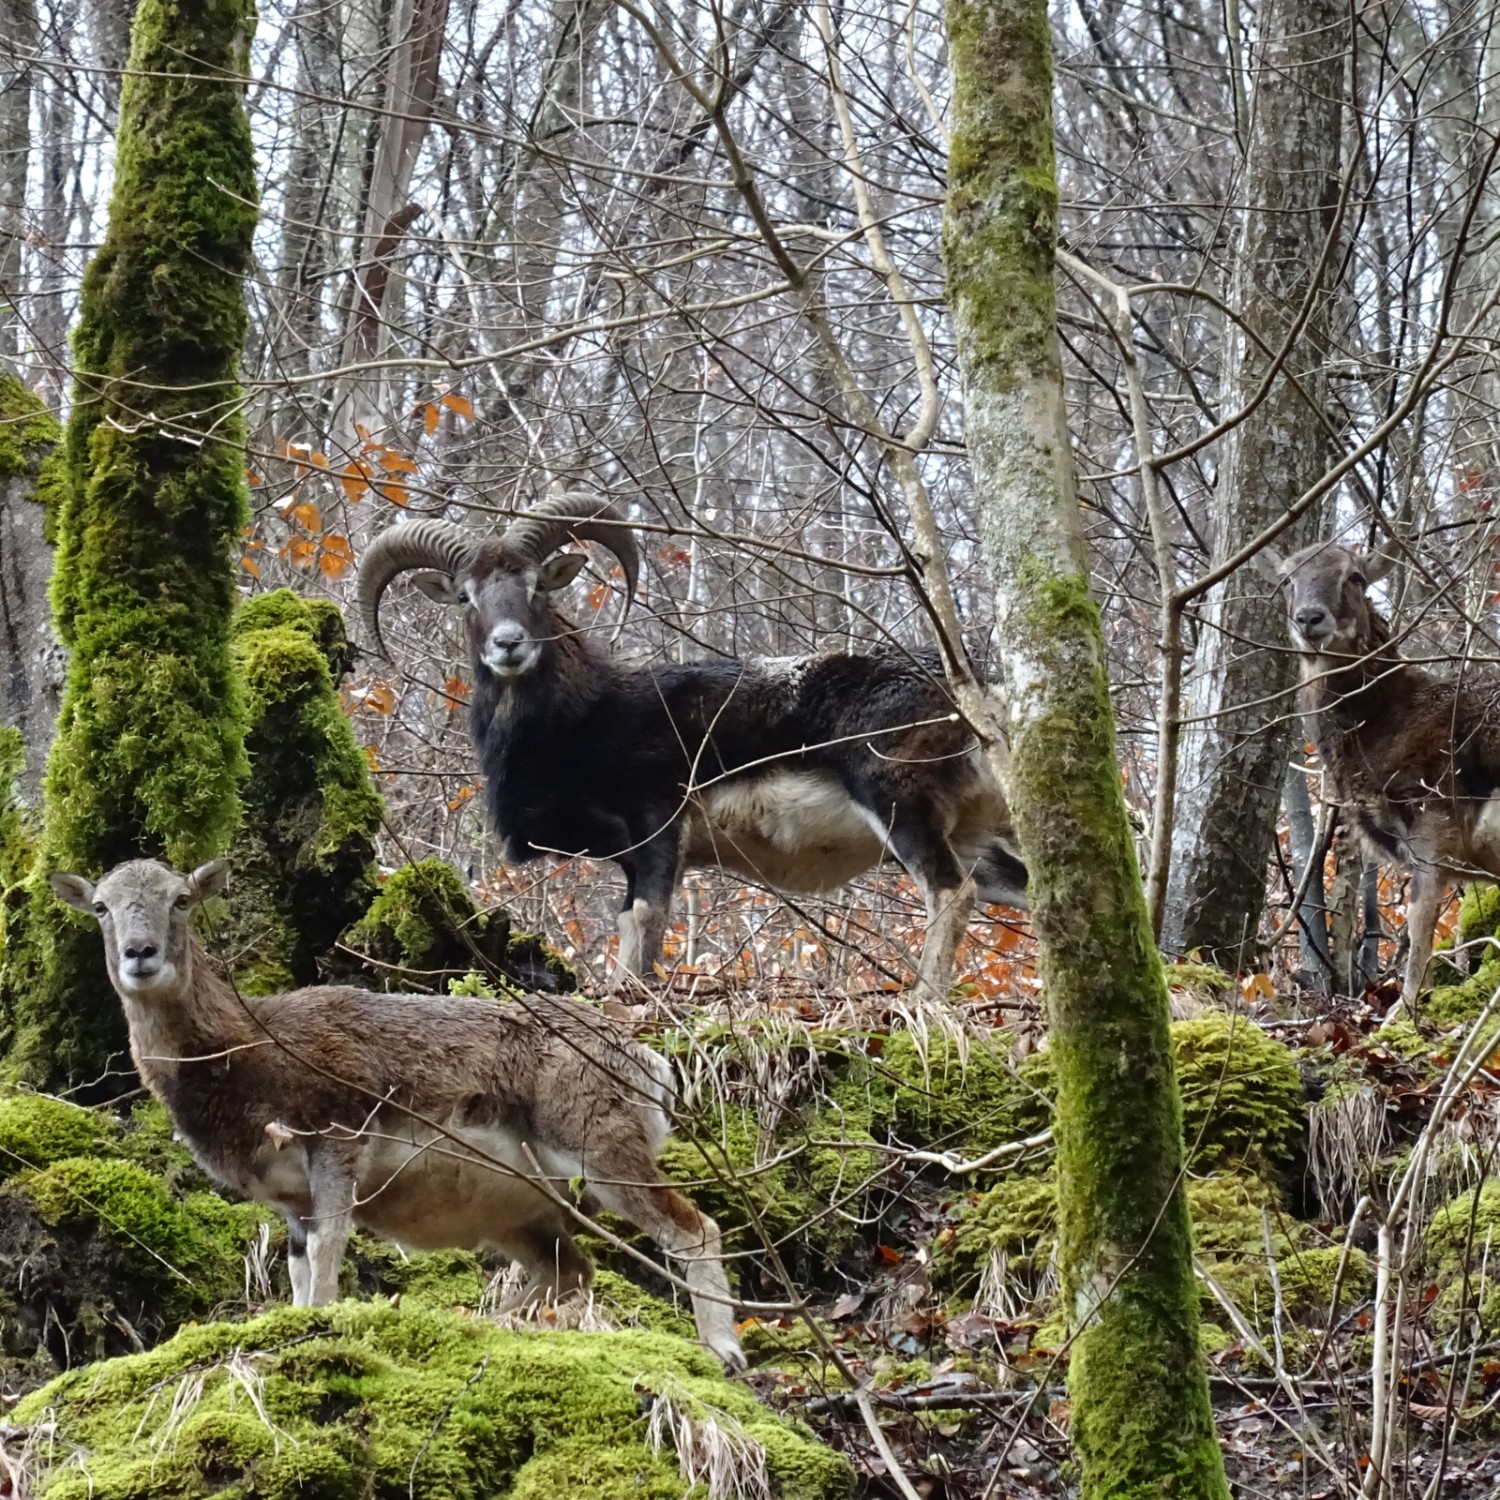 Les mouflons, immigrés en Valais depuis la Corse, sont devenus la mascotte régionale. Photo: màd
